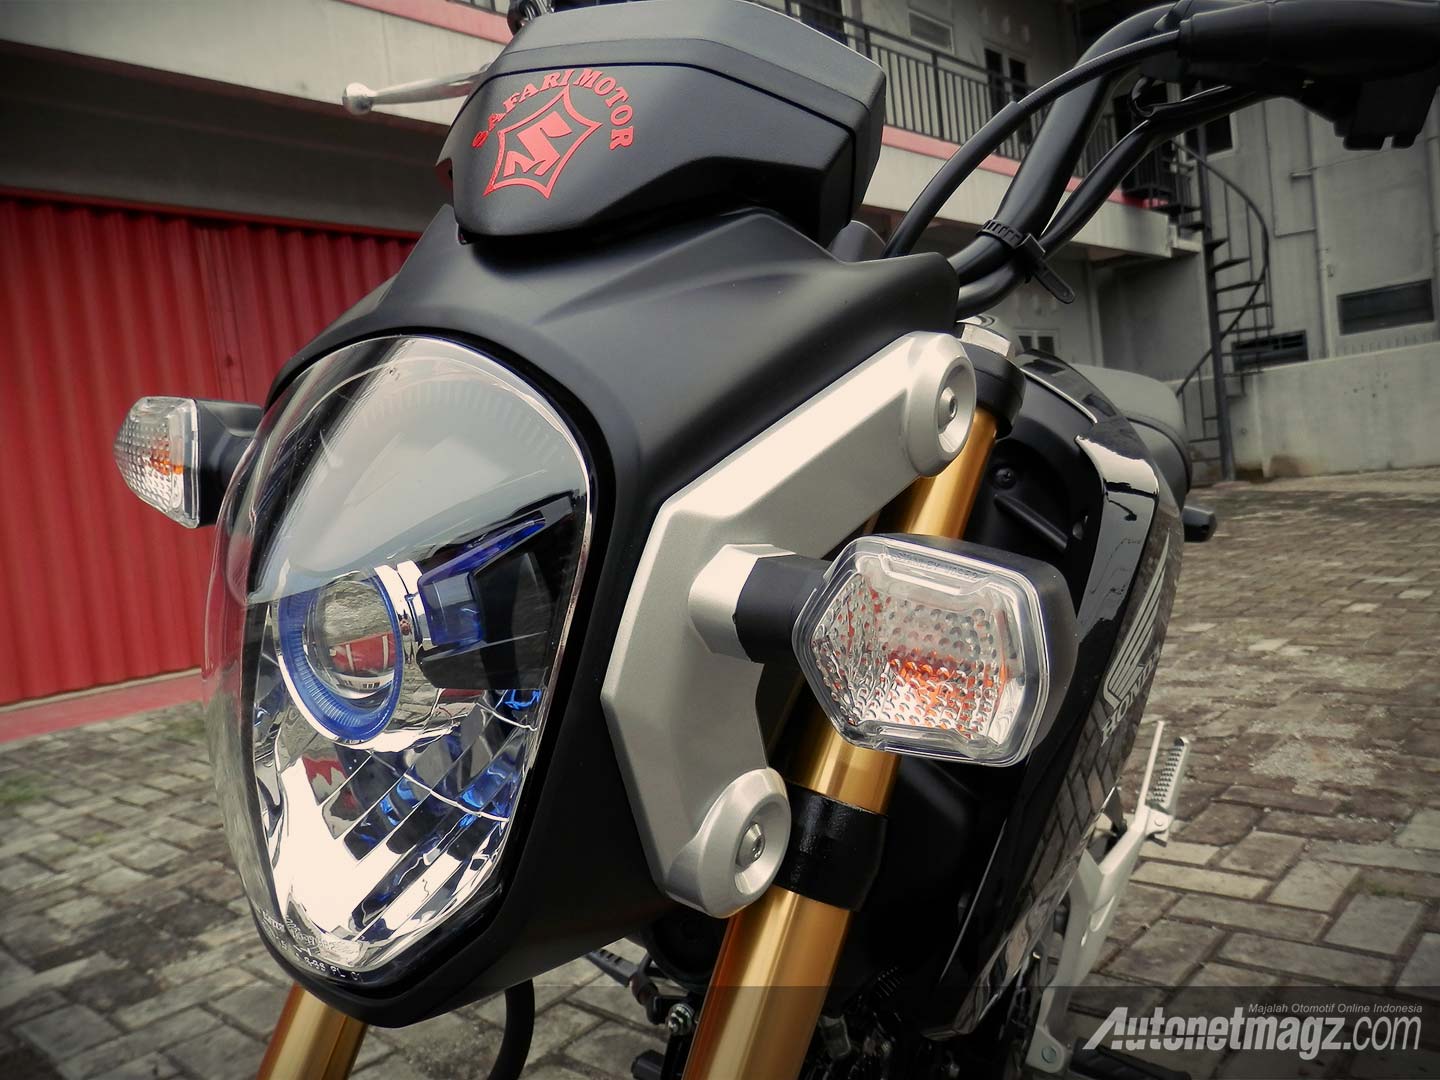 Honda, Projector lamp Honda MSX125 Indonesia: Honda MSX125 Si Kecil Yang Trendy Dan Bertenaga Mumpuni